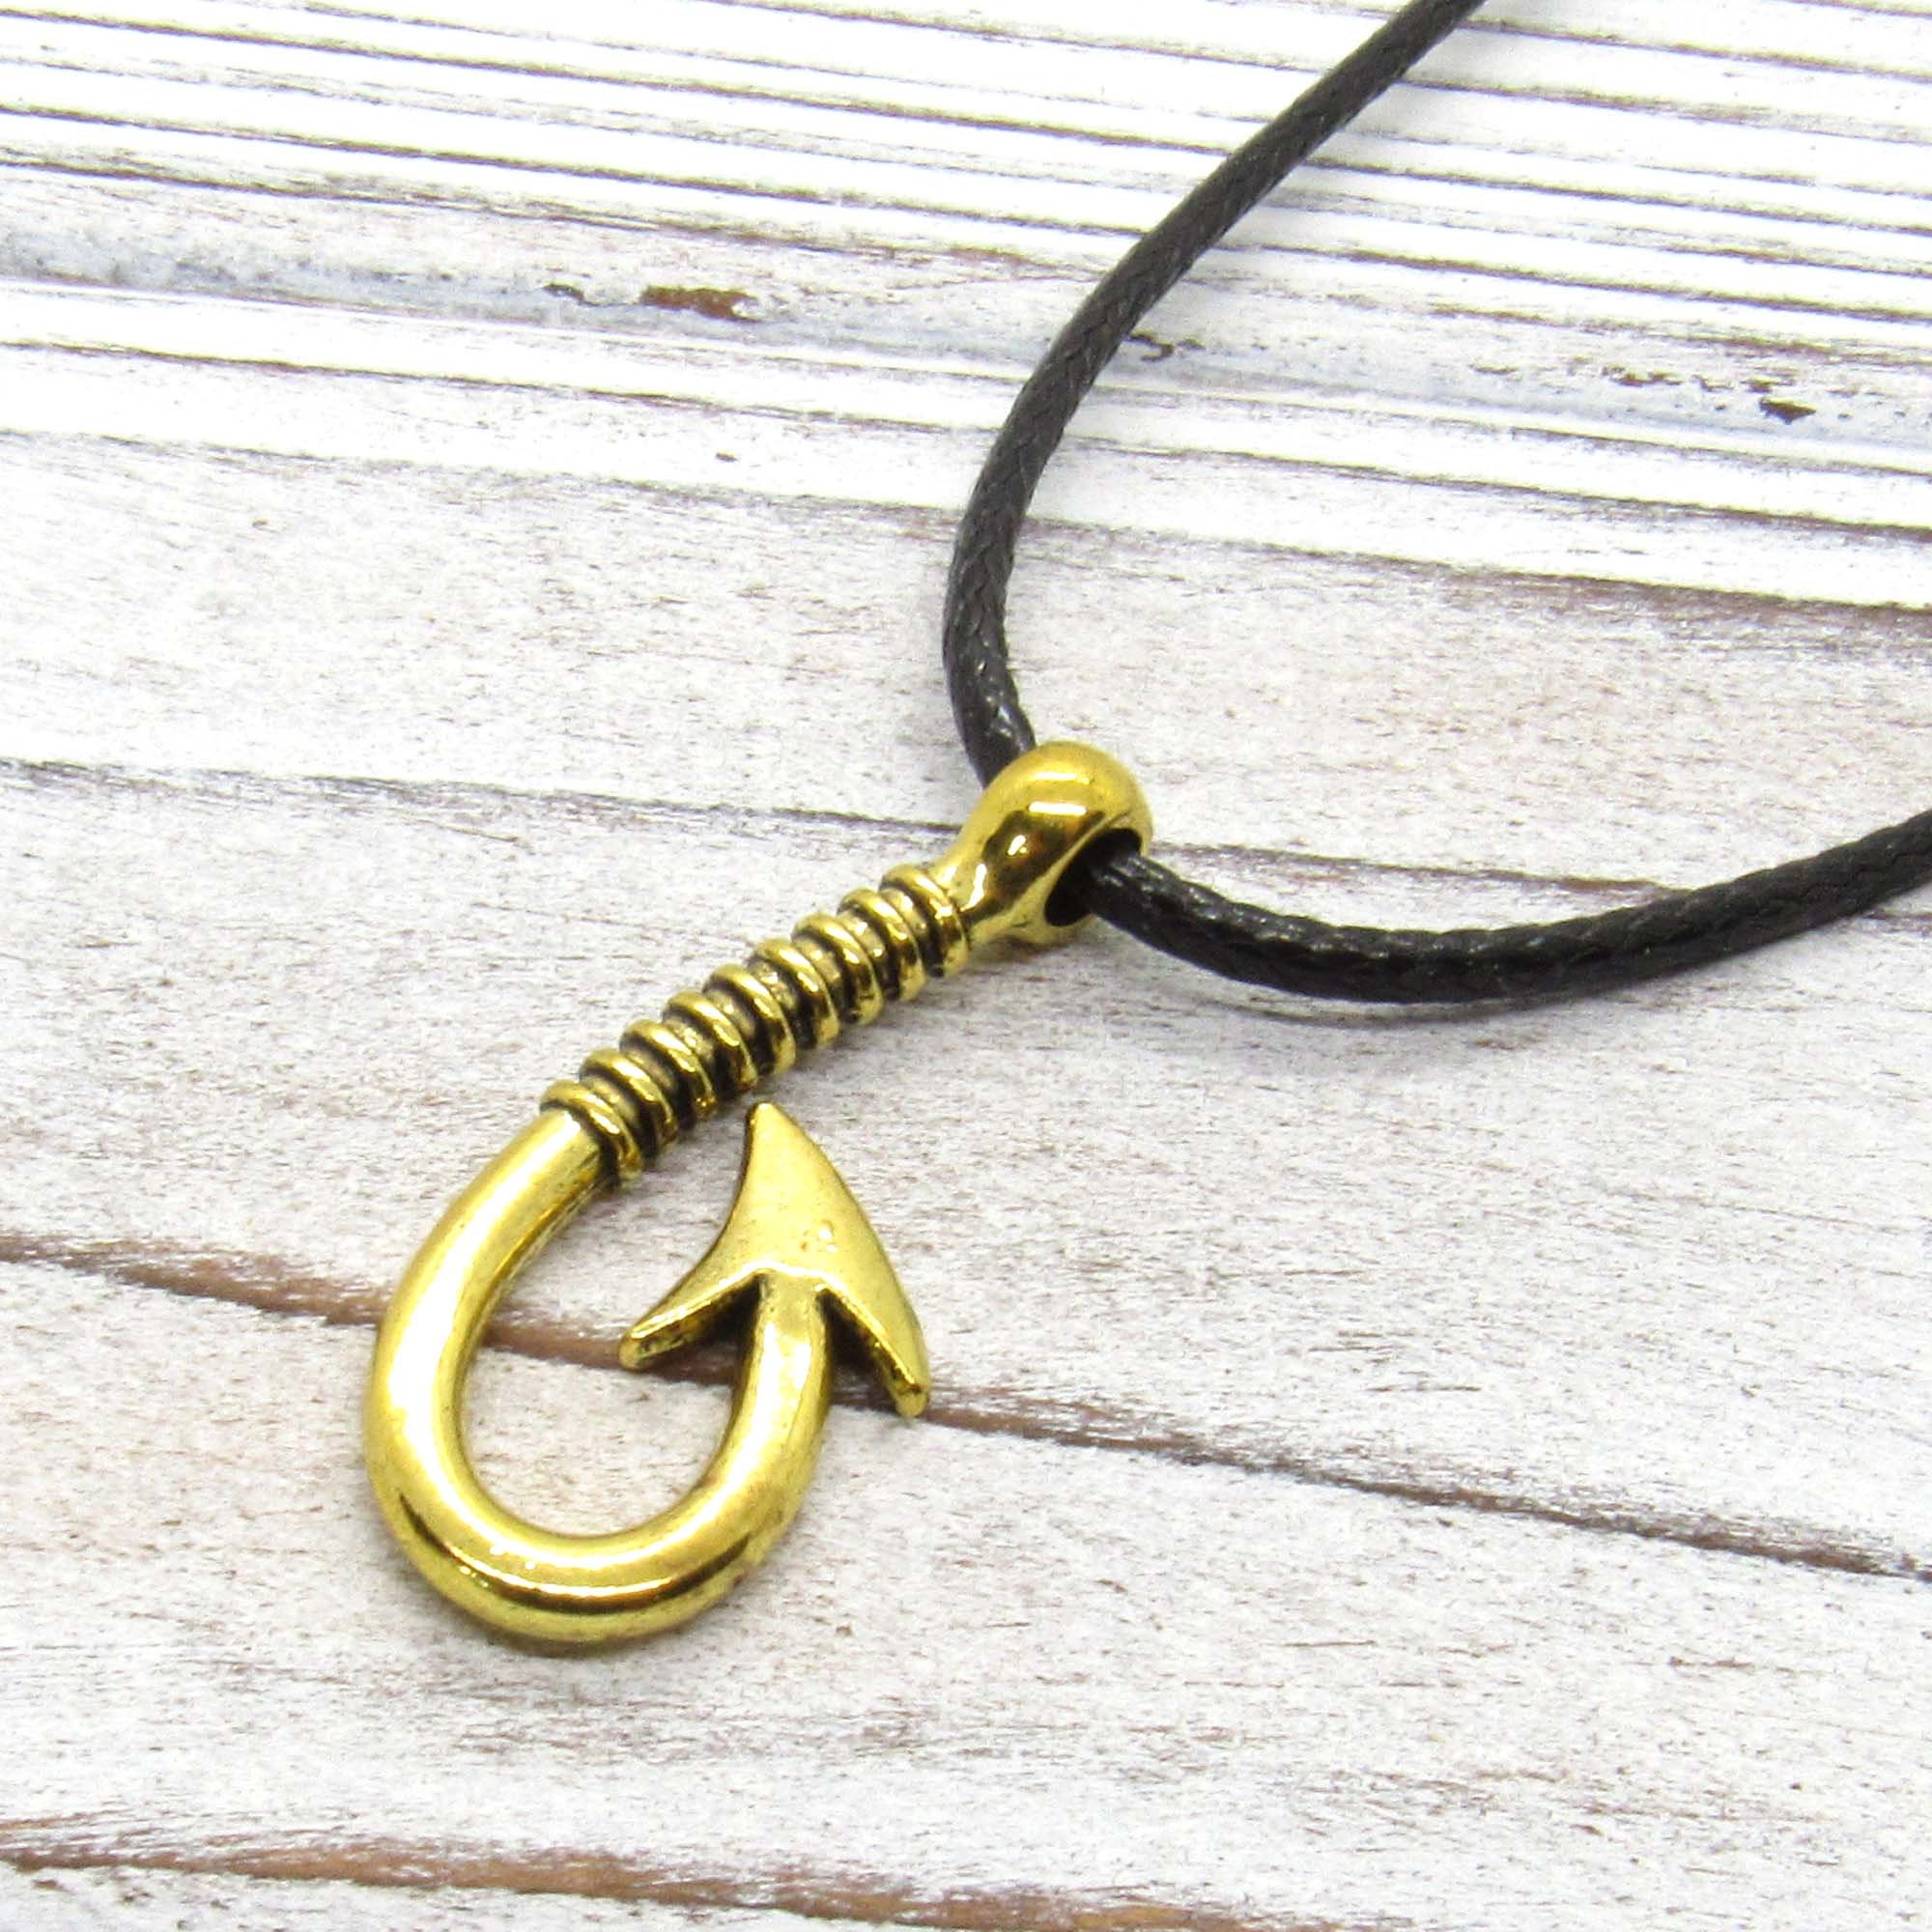 Antique Gold Tone Fish Hook Pendant Necklace, Fish Hook Charm Necklace,  Fisher Jewelry, Gift for Men, Men's Jewelry, Women's Jewelry